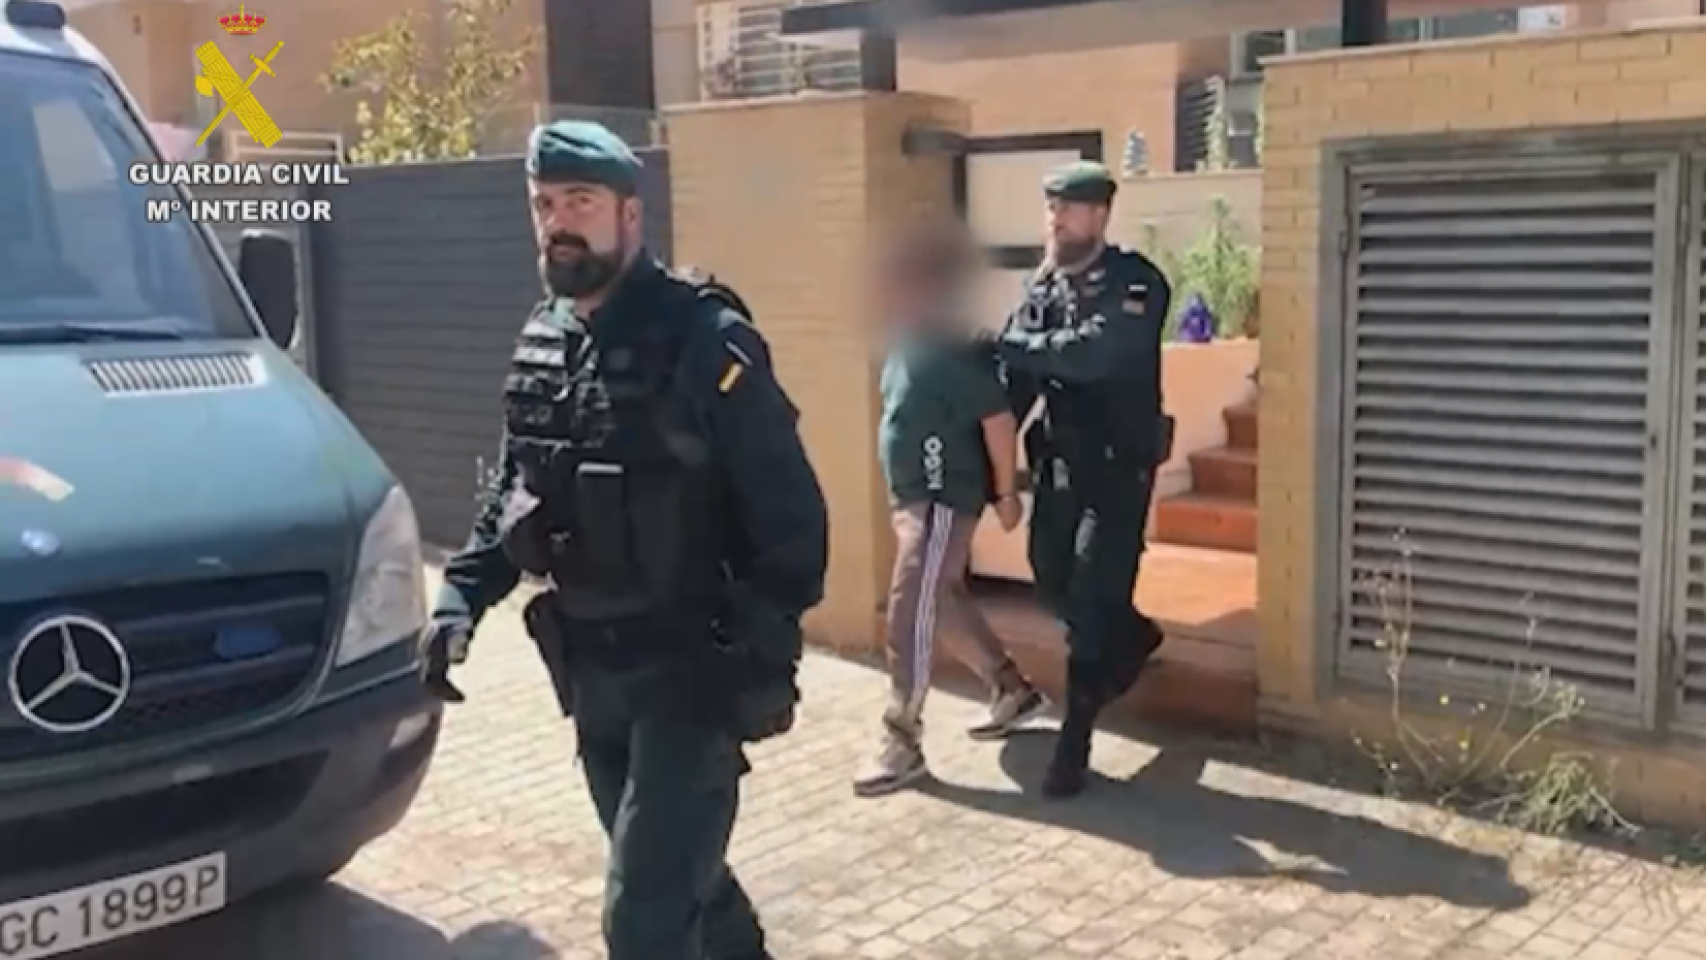 La Guardia Civil realizando una detención en Madrid.